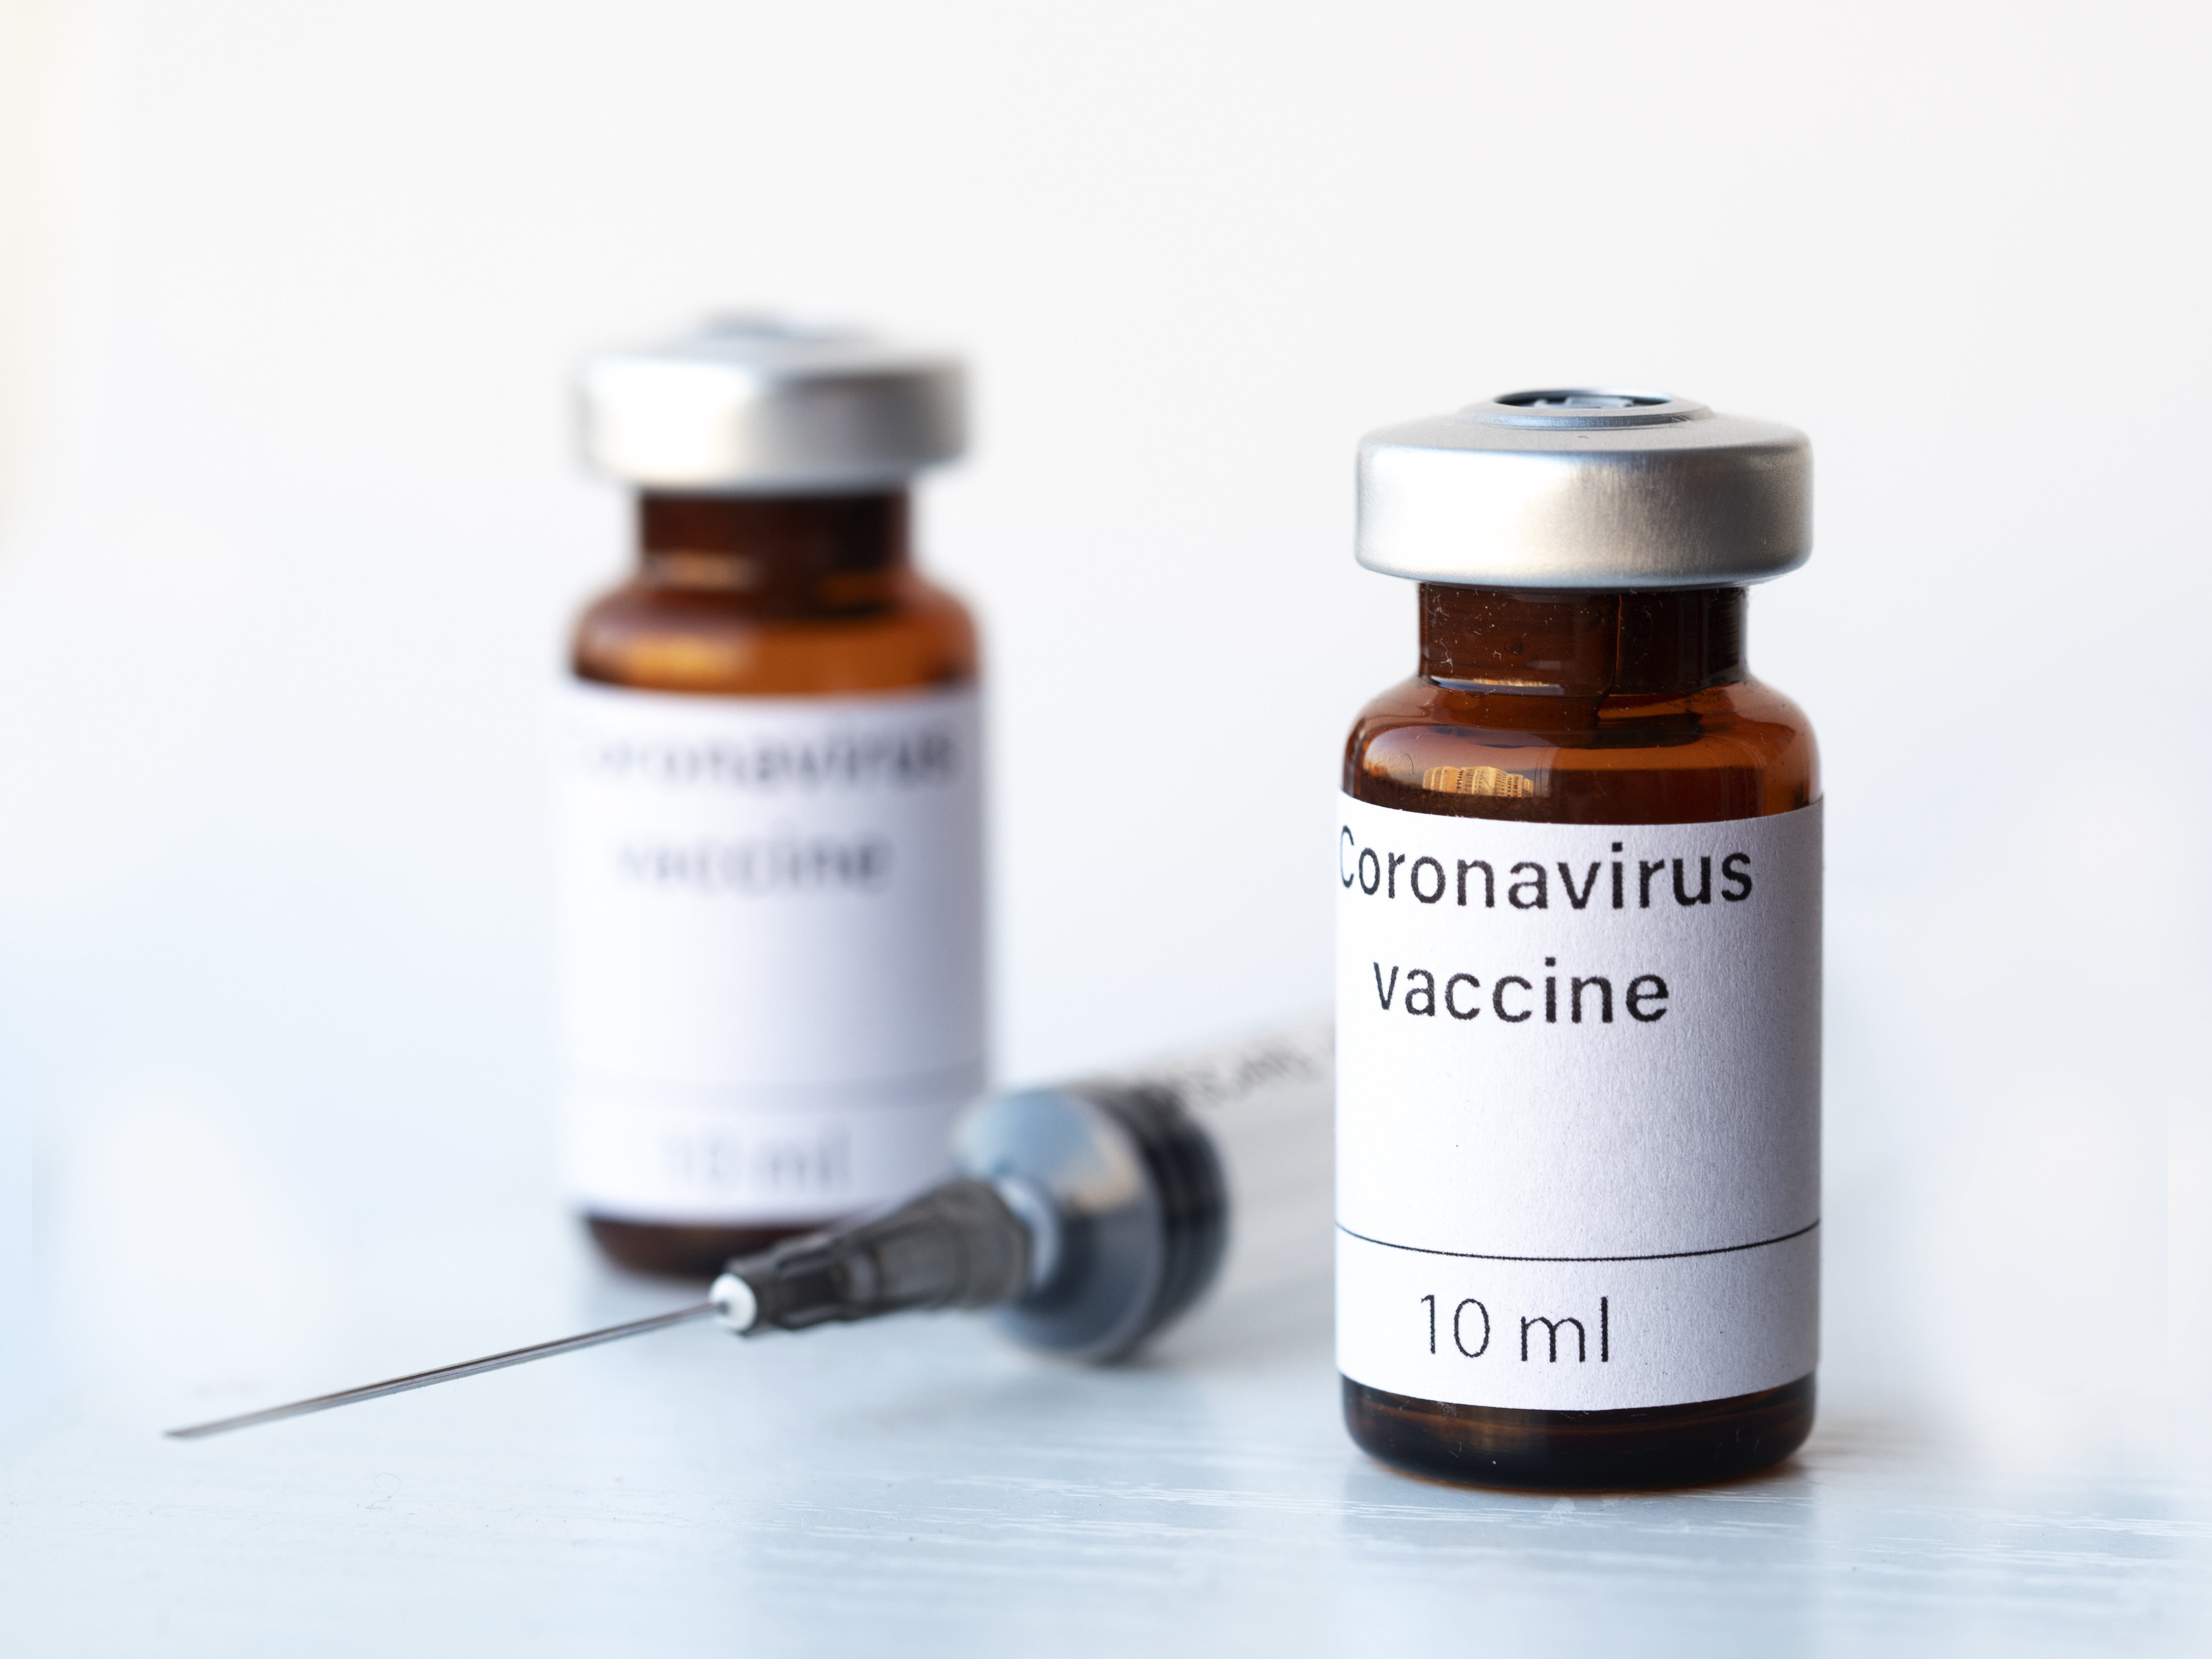 O veste bună: Vaccinul dezvoltat de Moderna se află în ultima fază a testării. SUA oferă companiei încă 472 mil. dolari